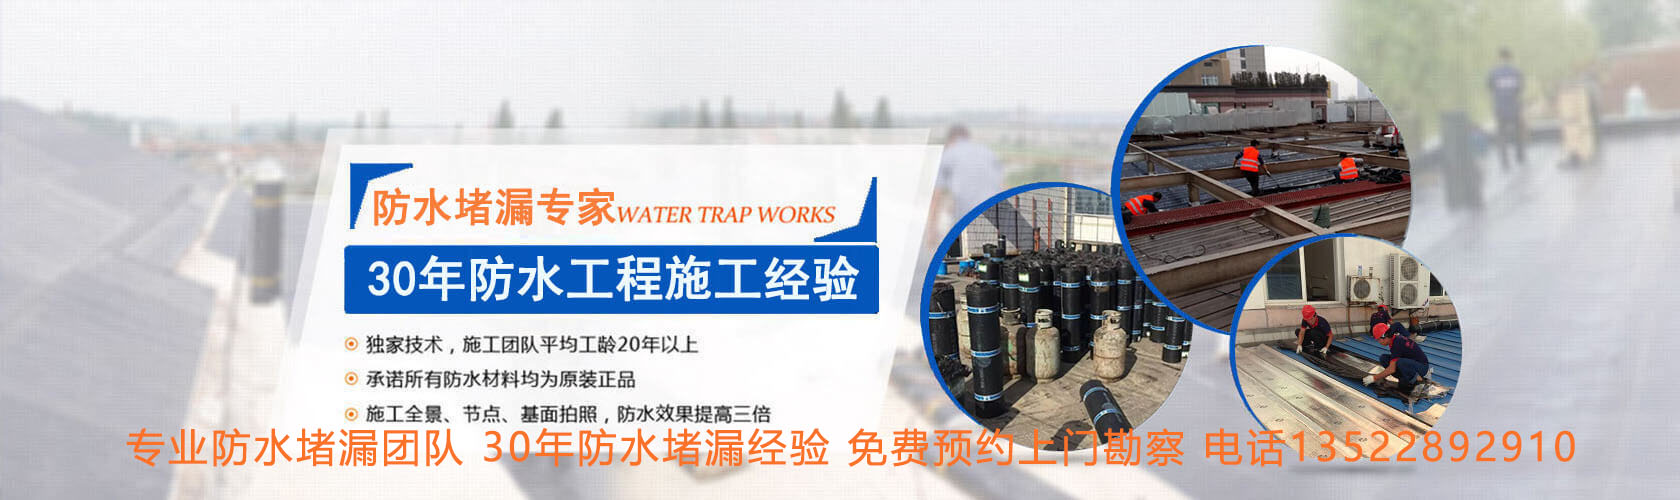 北京专业防水堵漏团队,30年防水堵漏经验 ,免费预约上门勘察 ,电话13522892910